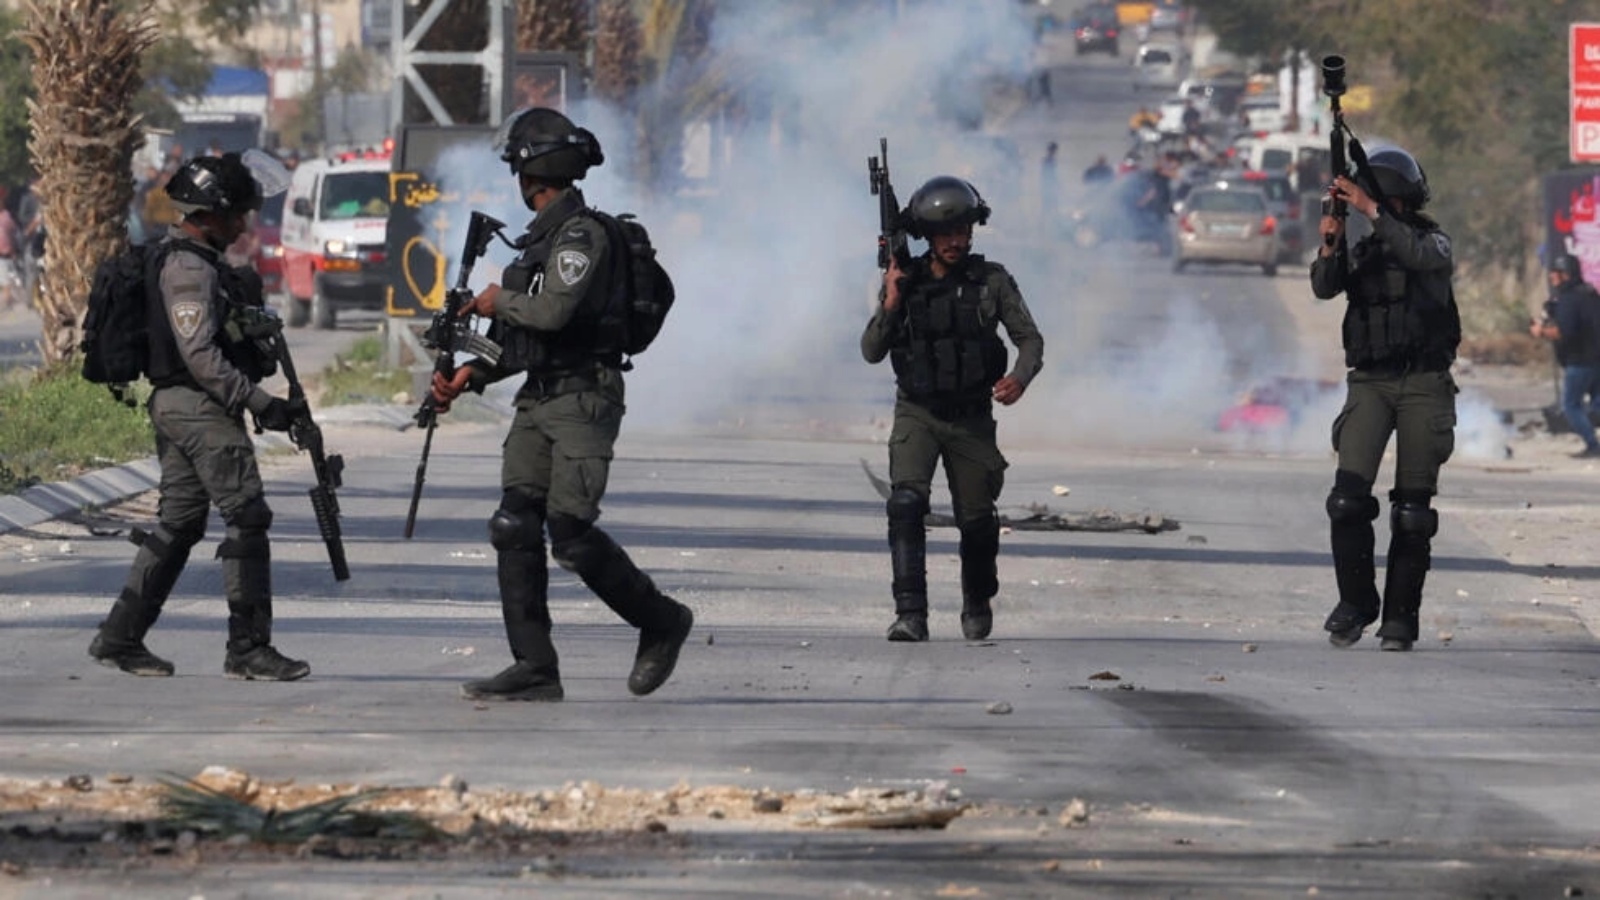 صورة من صدامات بين قوات الأمن الإسرائيلية وشبان فلسطينيين خلال غارة عسكرية على مدينة أريحا بالضفة الغربية المحتلة في 1 مارس 2023 